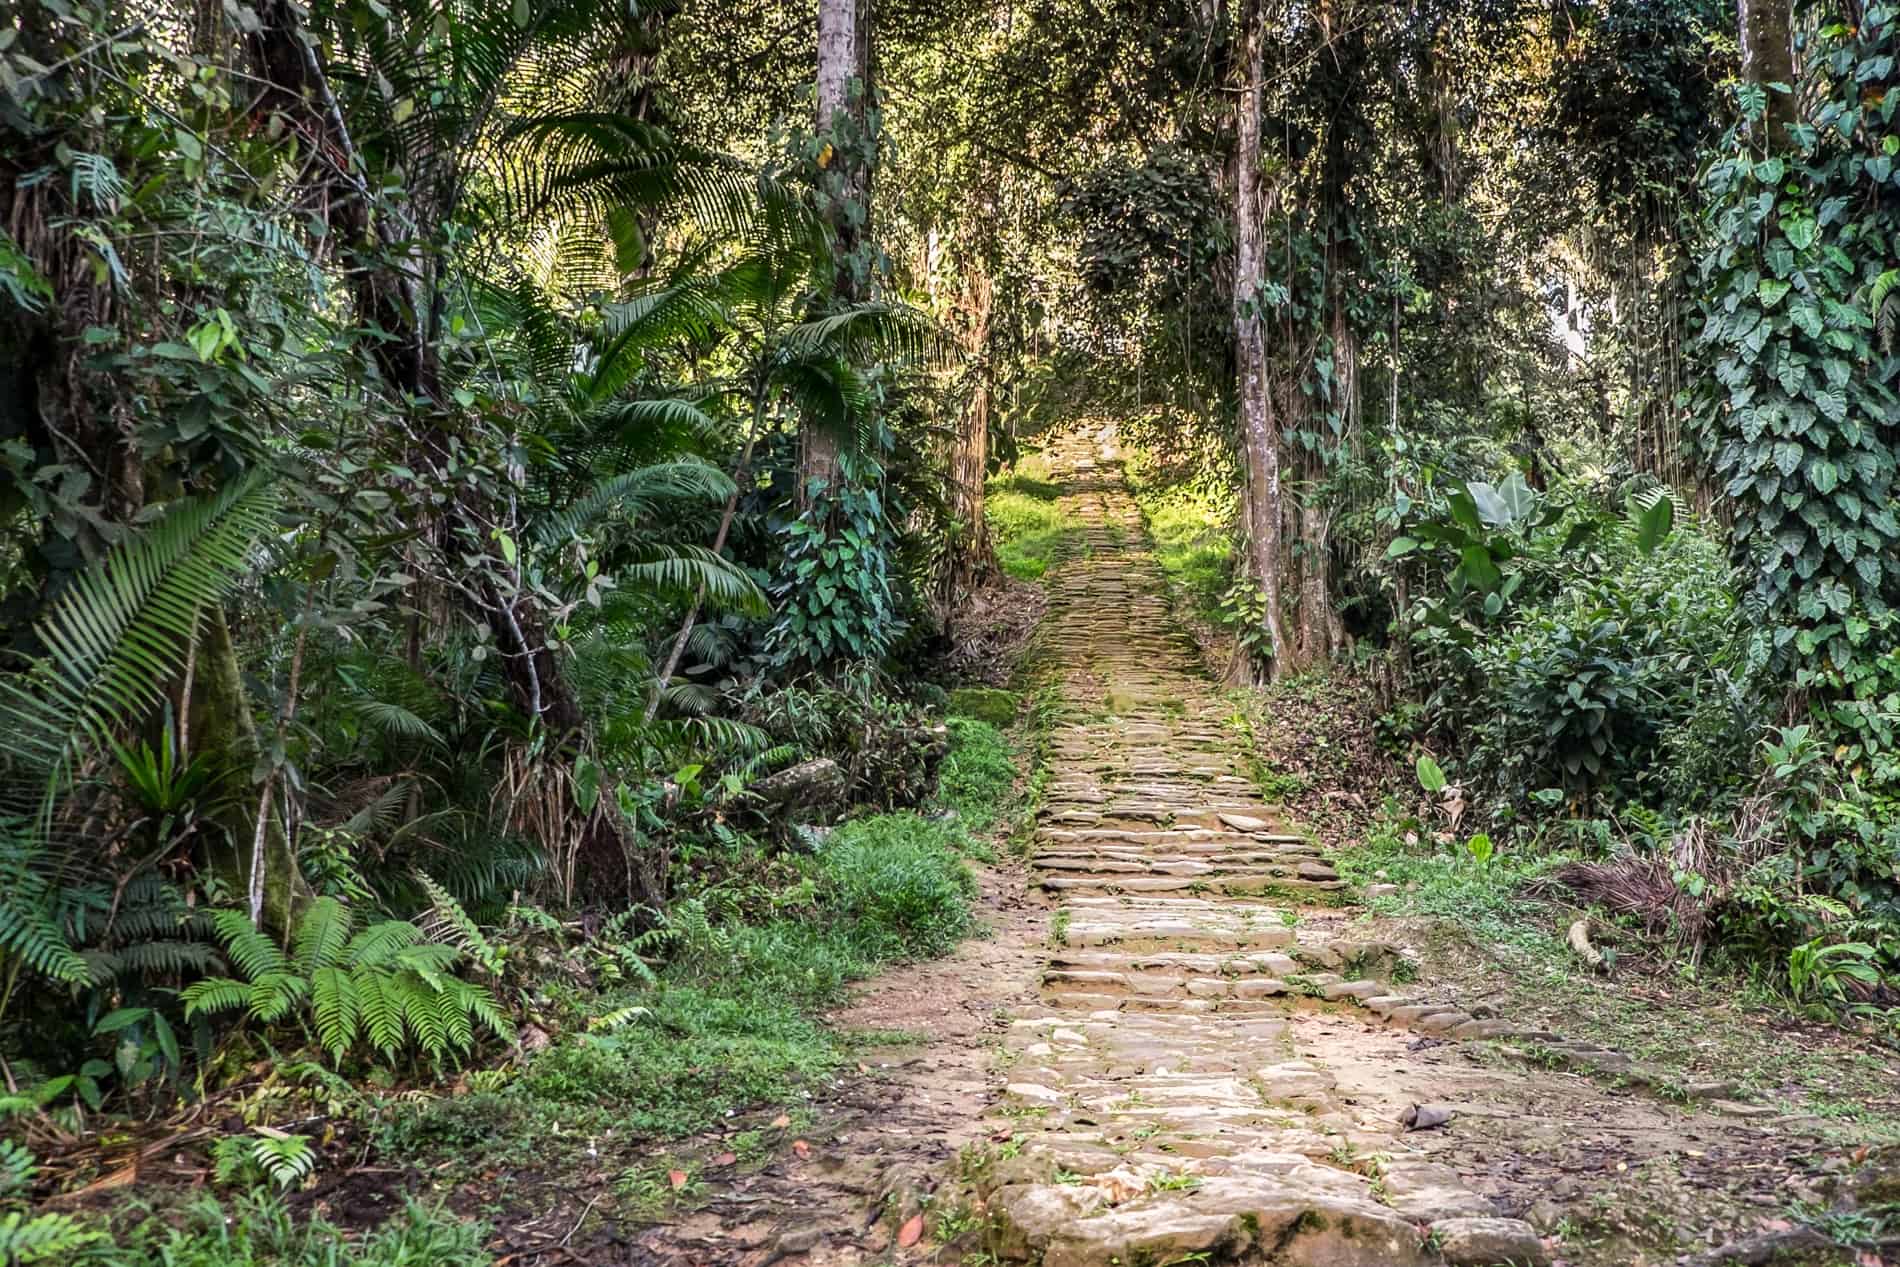 Stone pathway through jungle in the Lost City Ciudad Perdida.